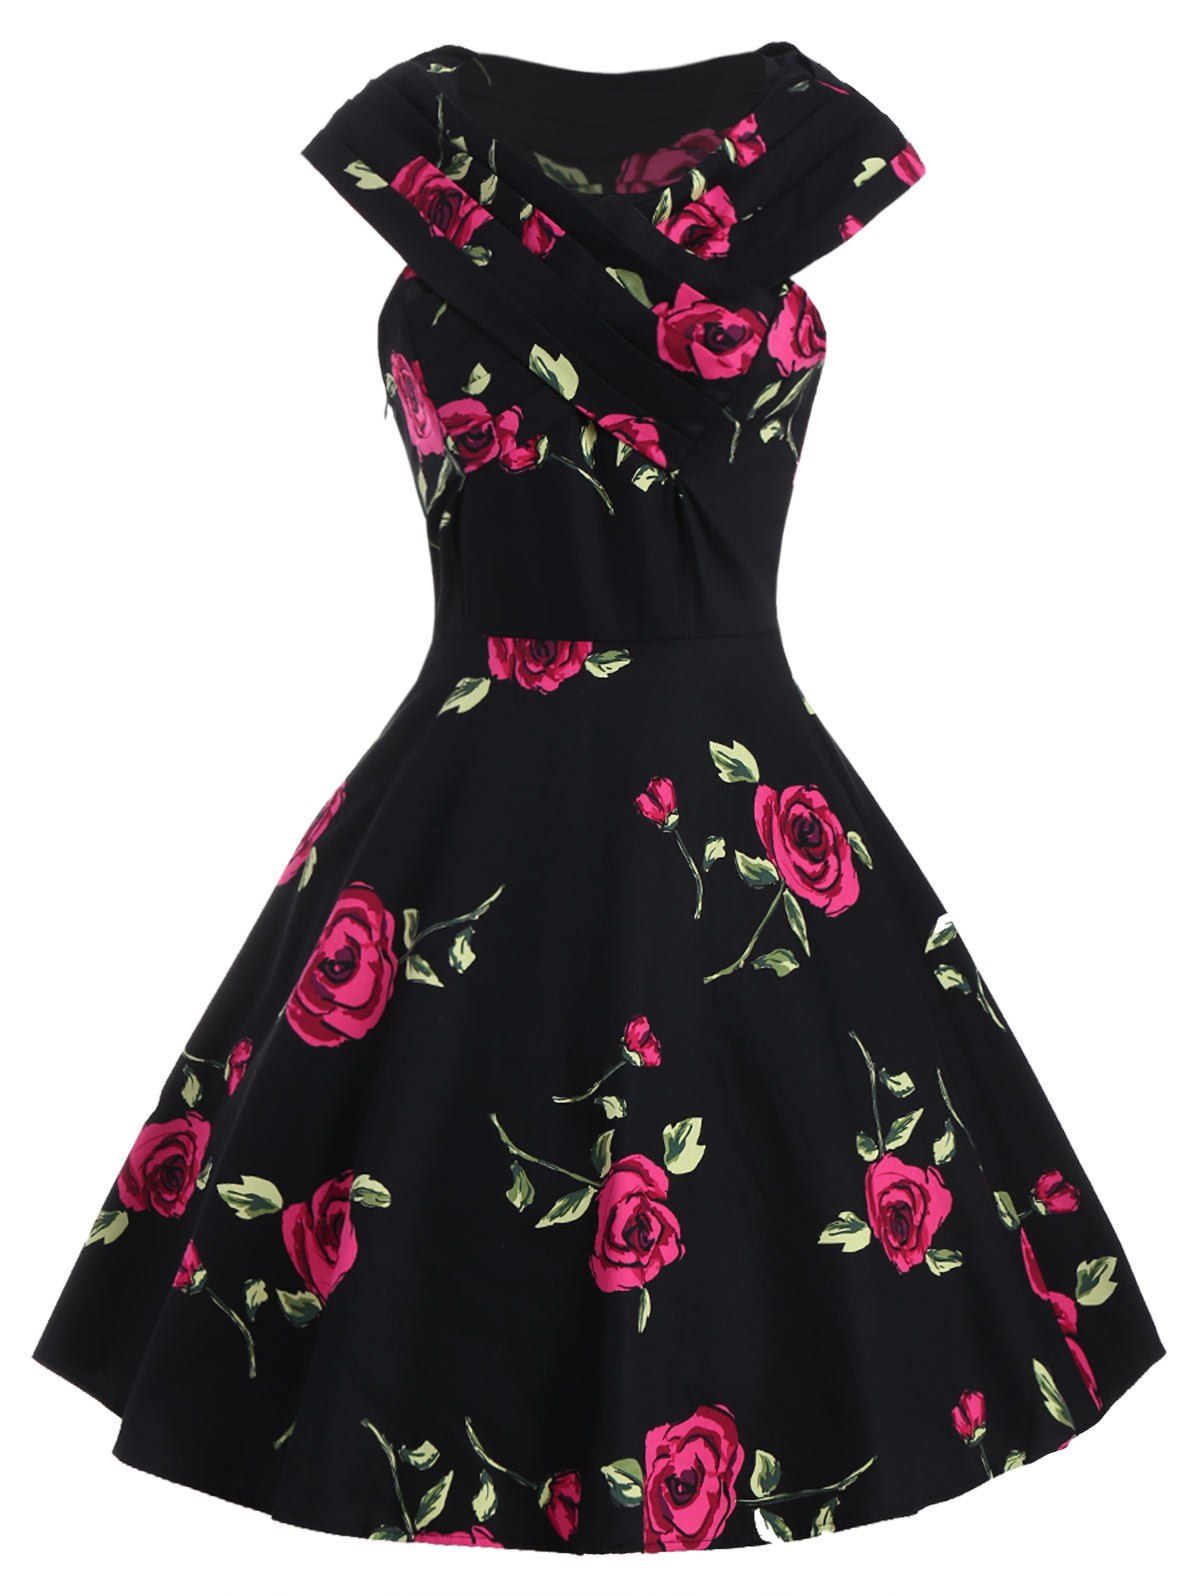 Retro Style Rose Print V-Neck Short Sleeve Ball Dress For Women - RED M